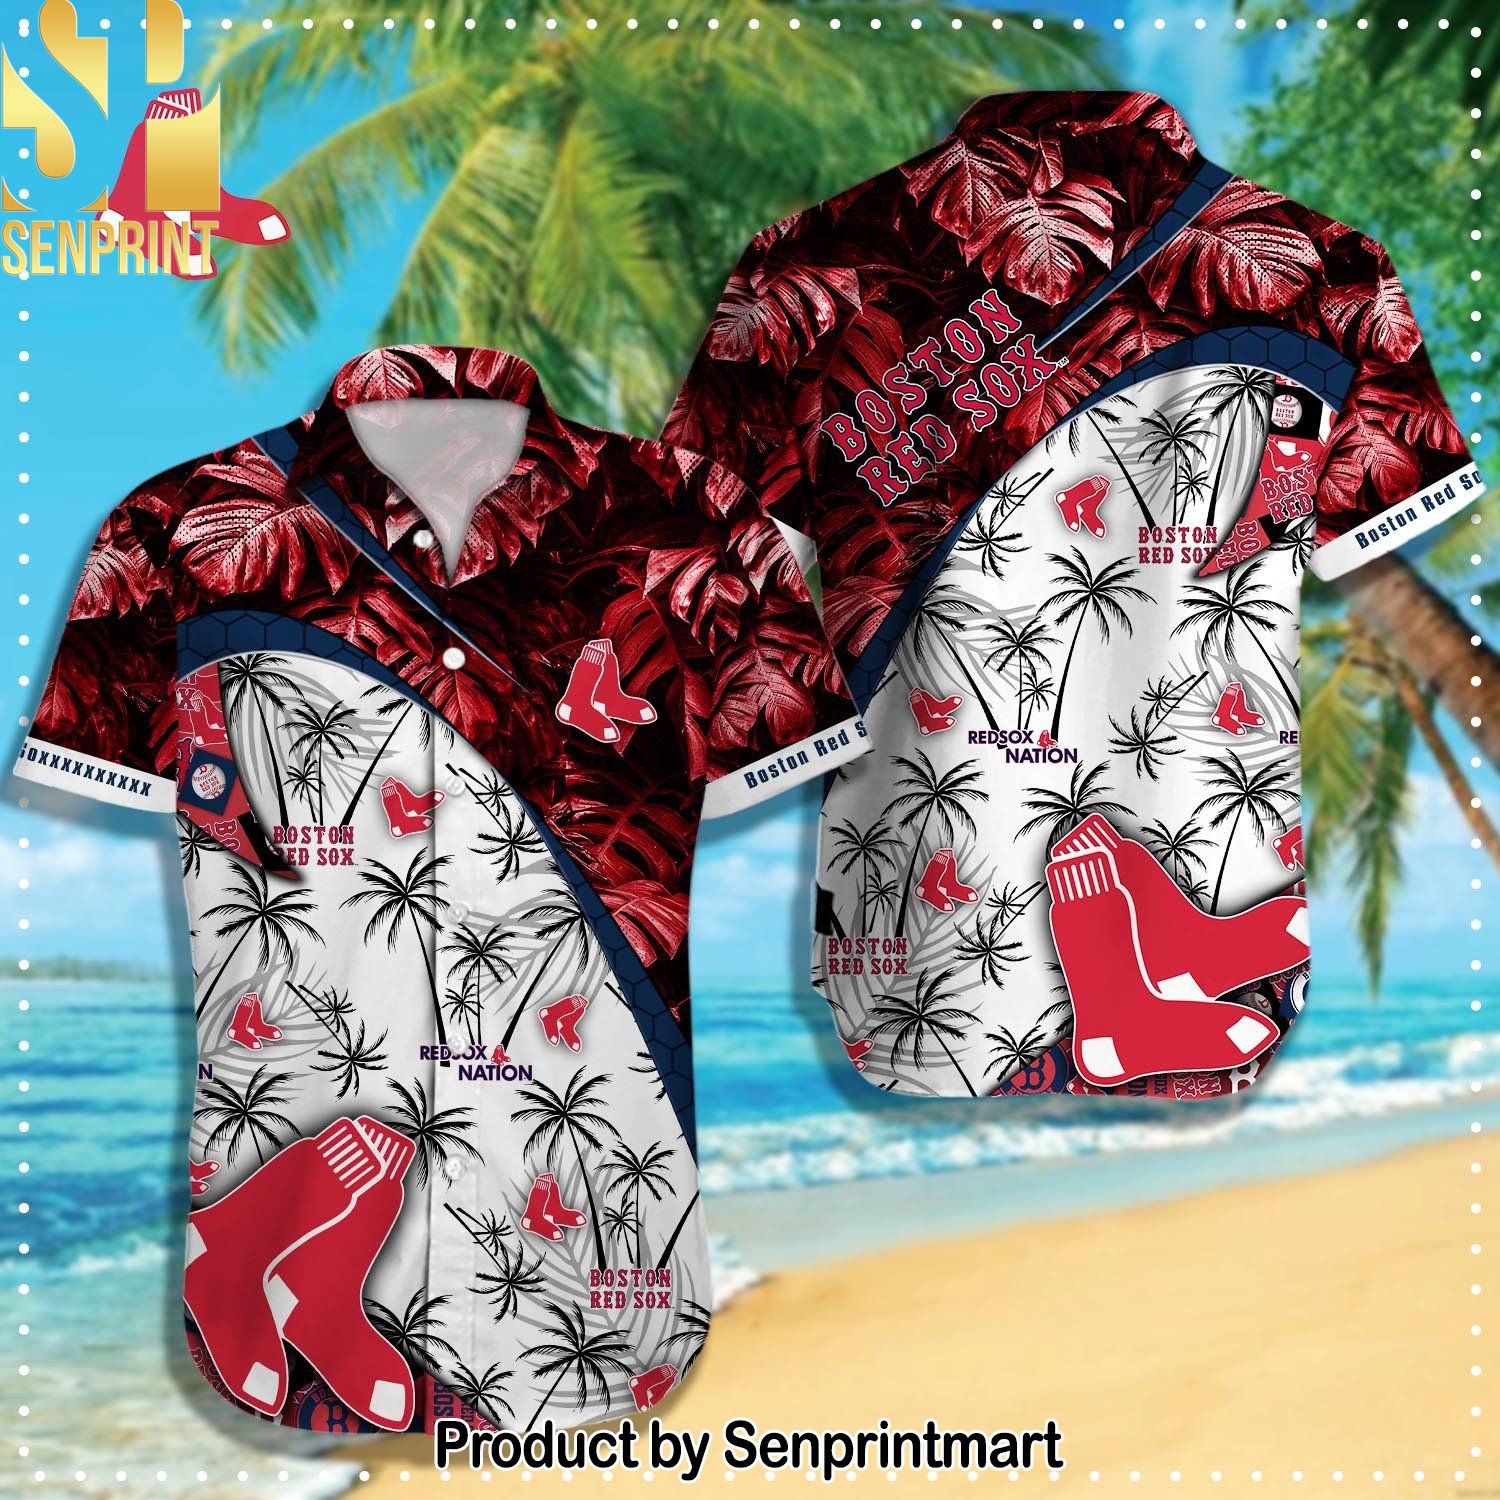 Boston Red Sox MLB Gift Ideas Full Printing Hawaiian Shirt and Shorts